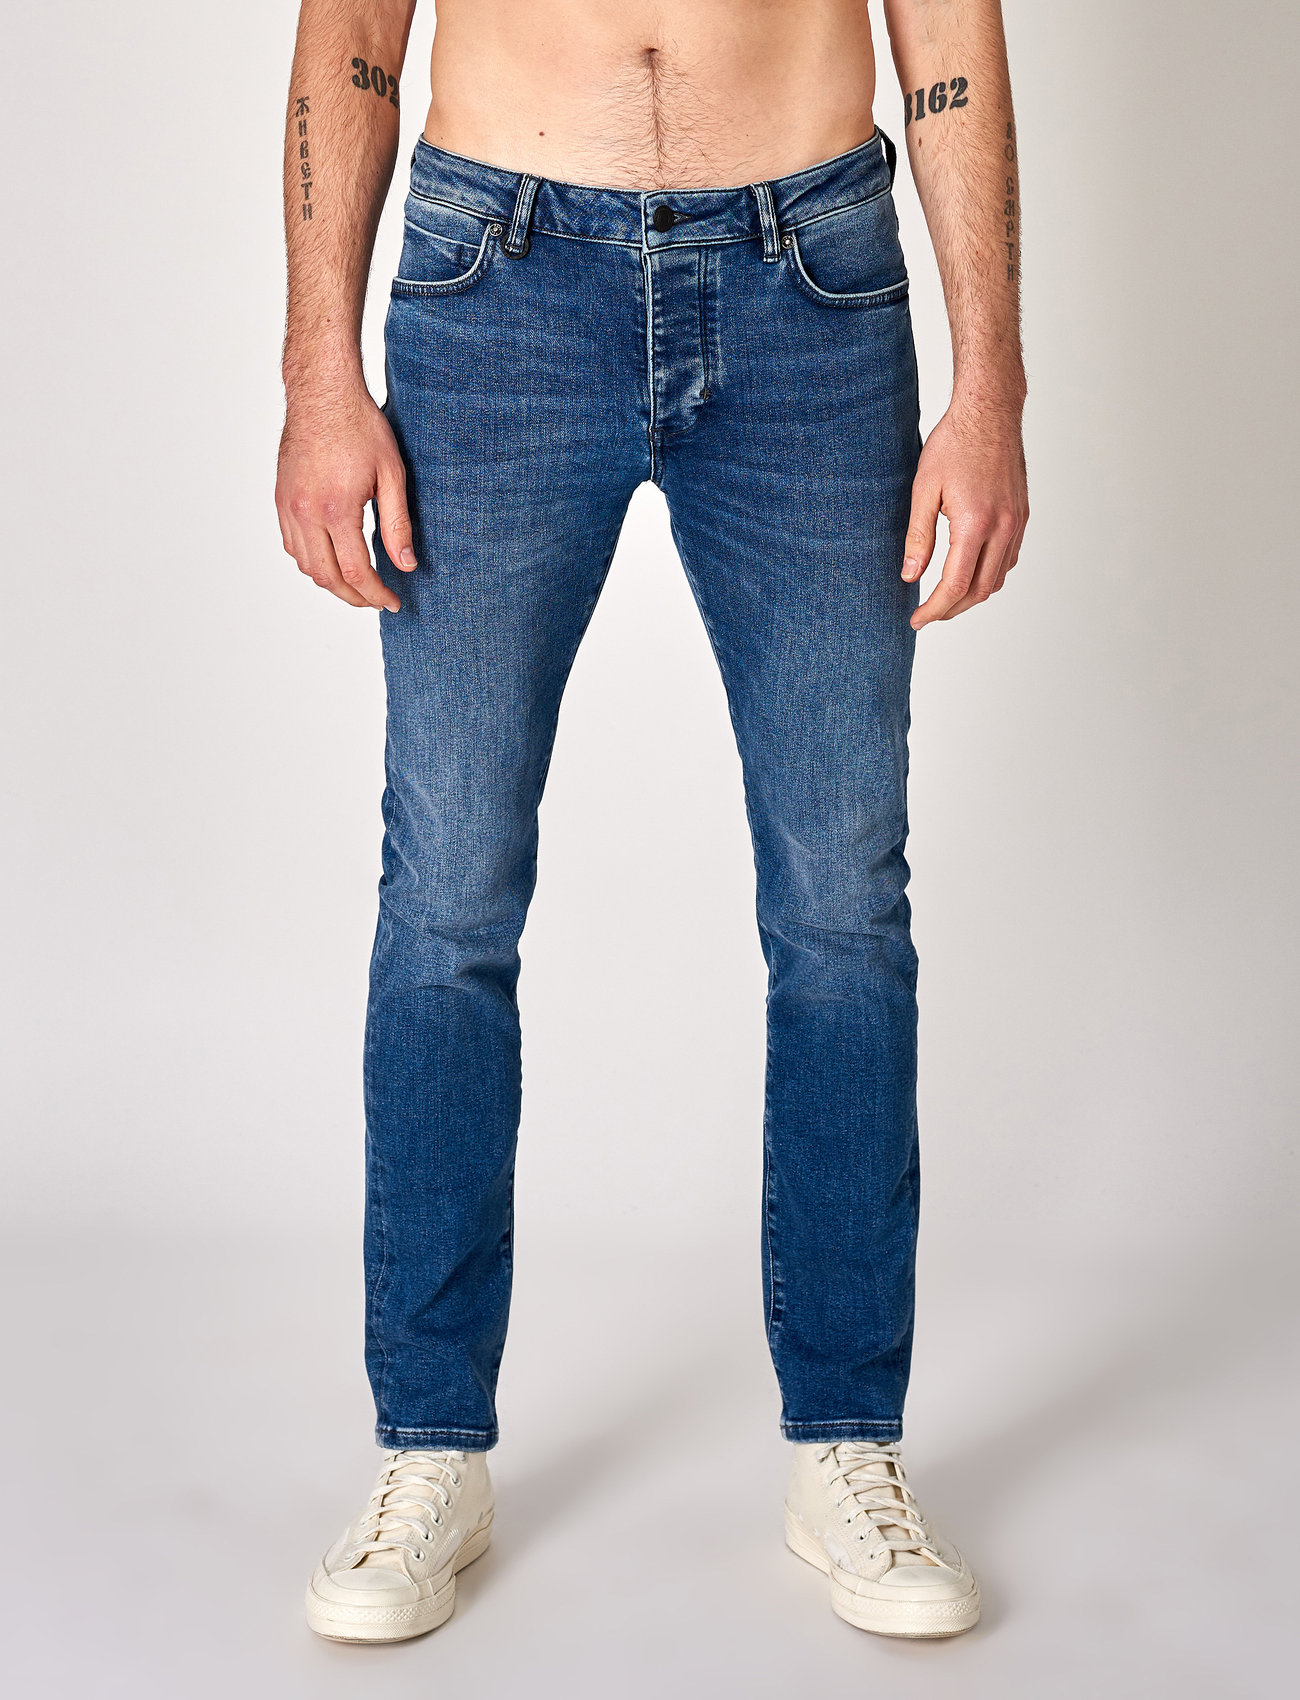 NEUW - IGGY SKINNY - skinny jeans - artful - 0